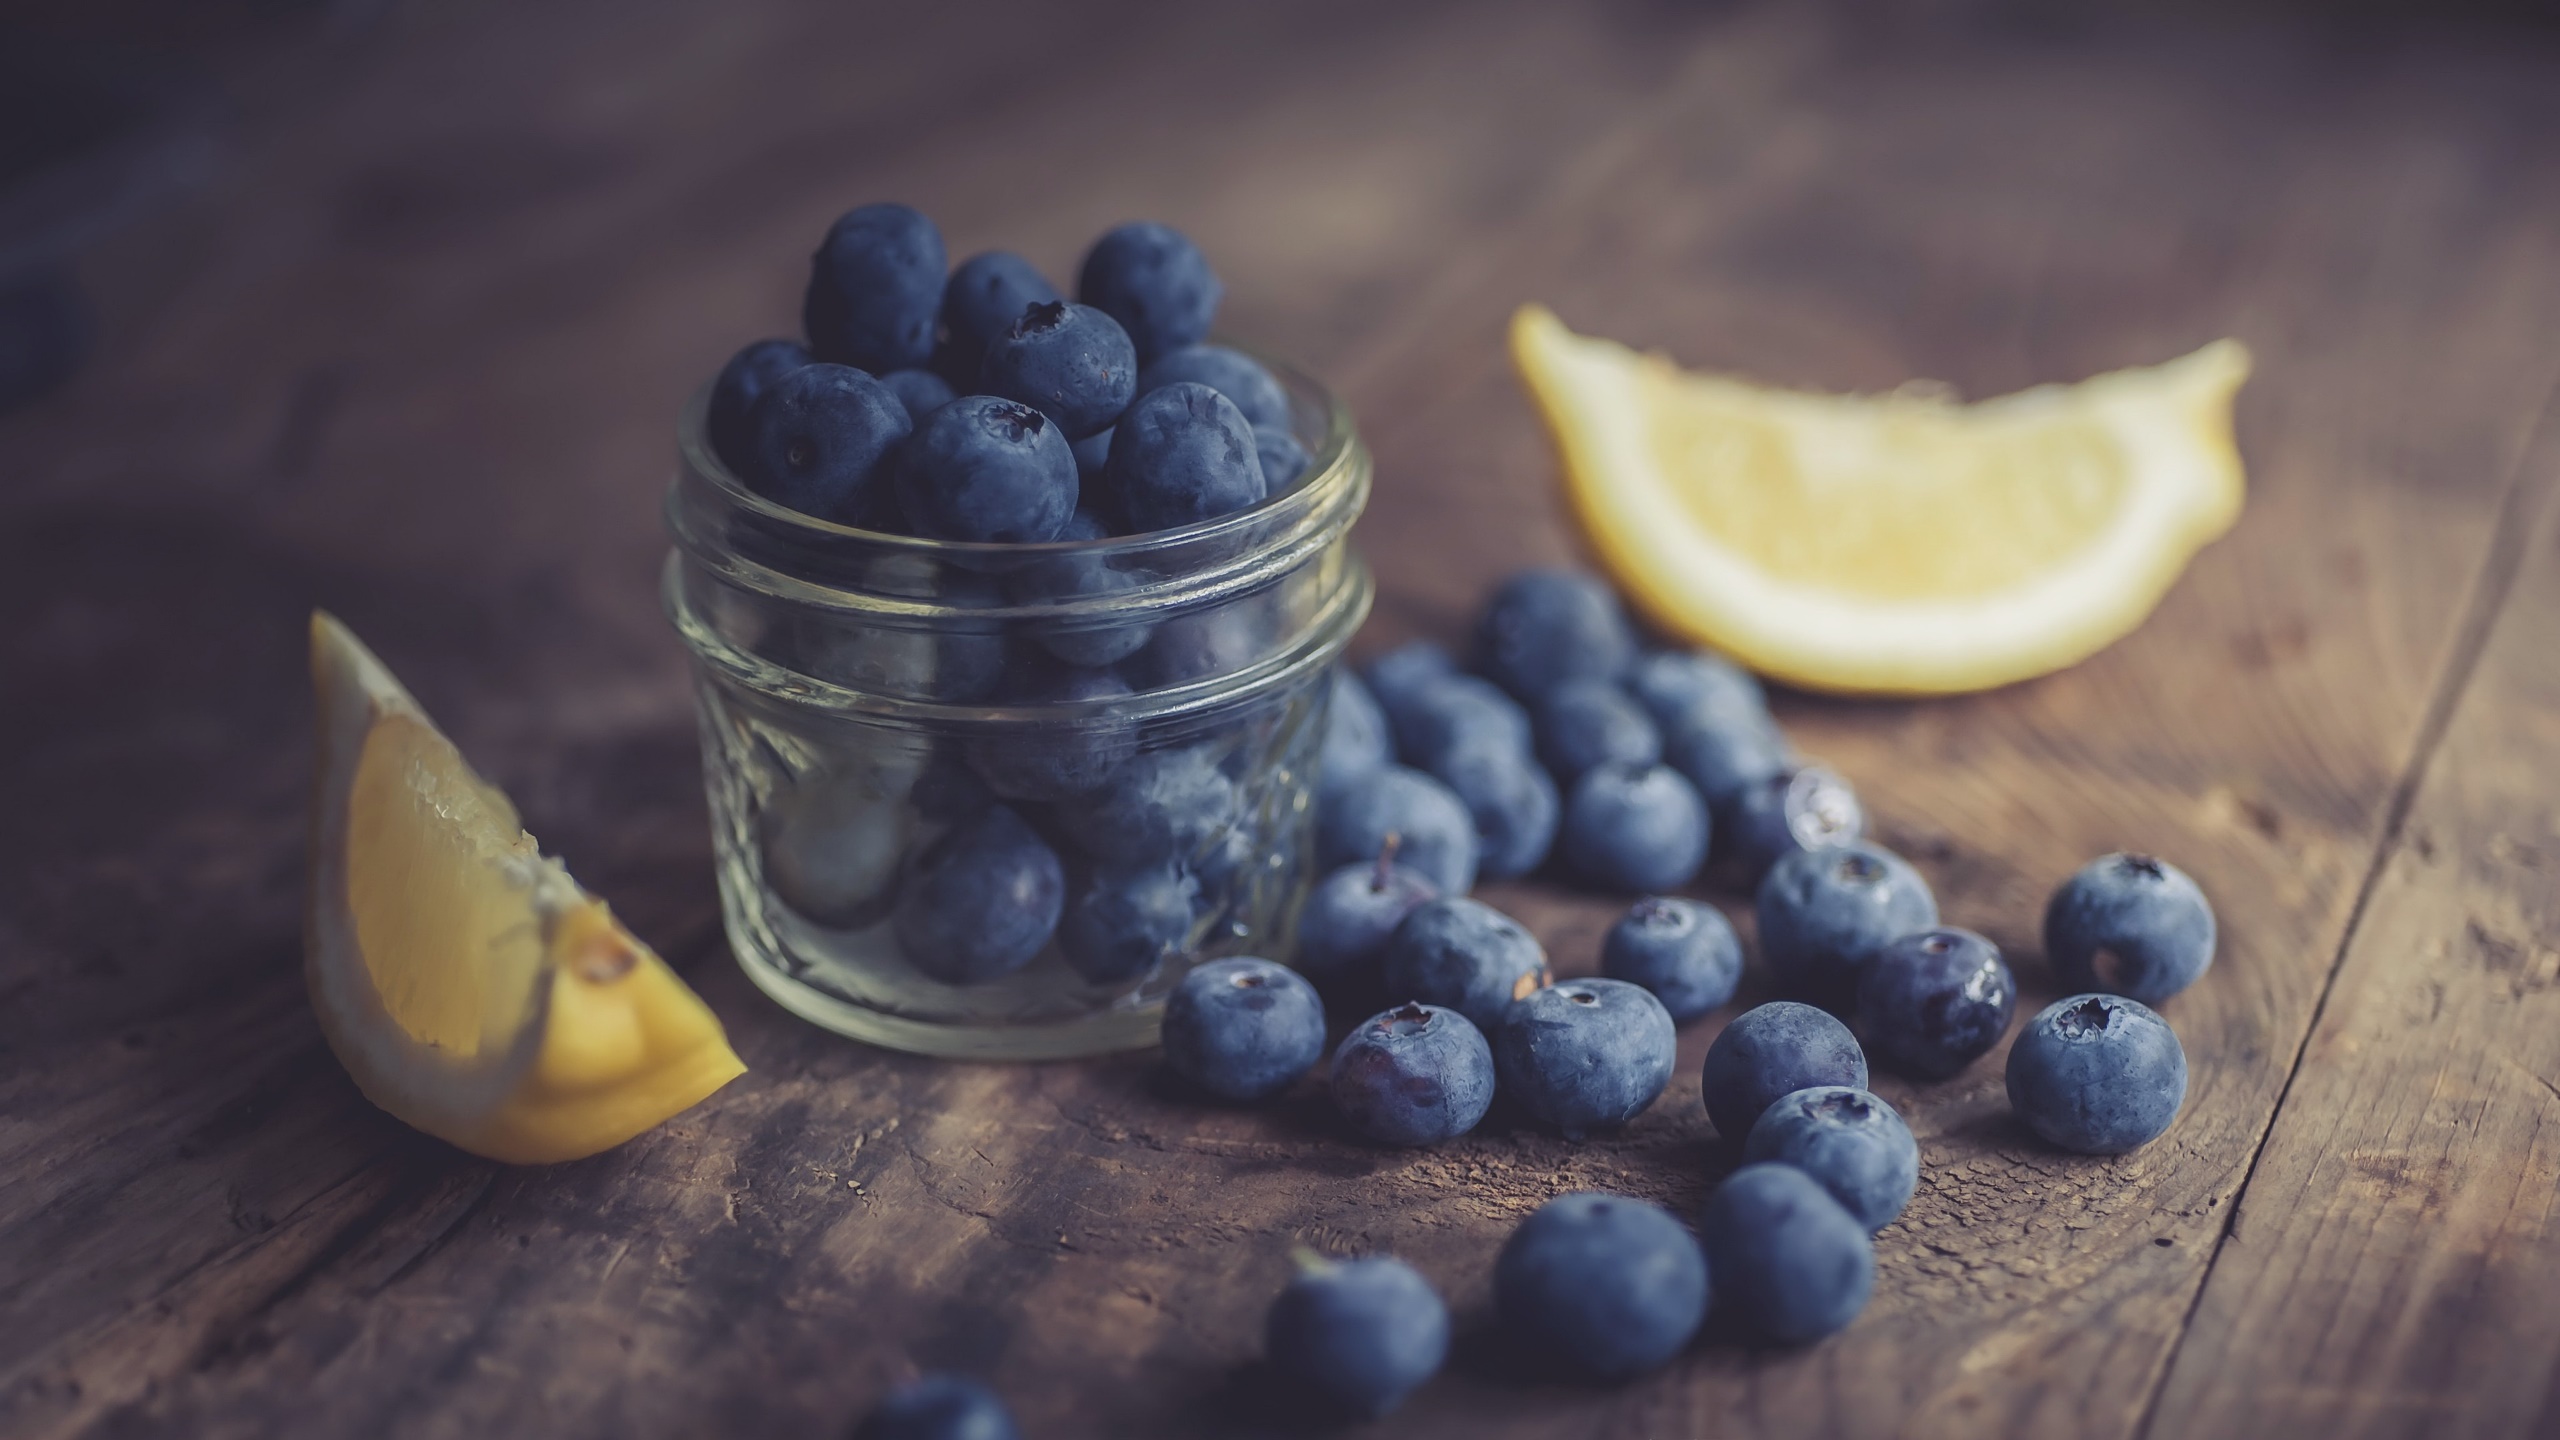 General 2560x1440 food fruit berries blueberries lemons jar wooden surface